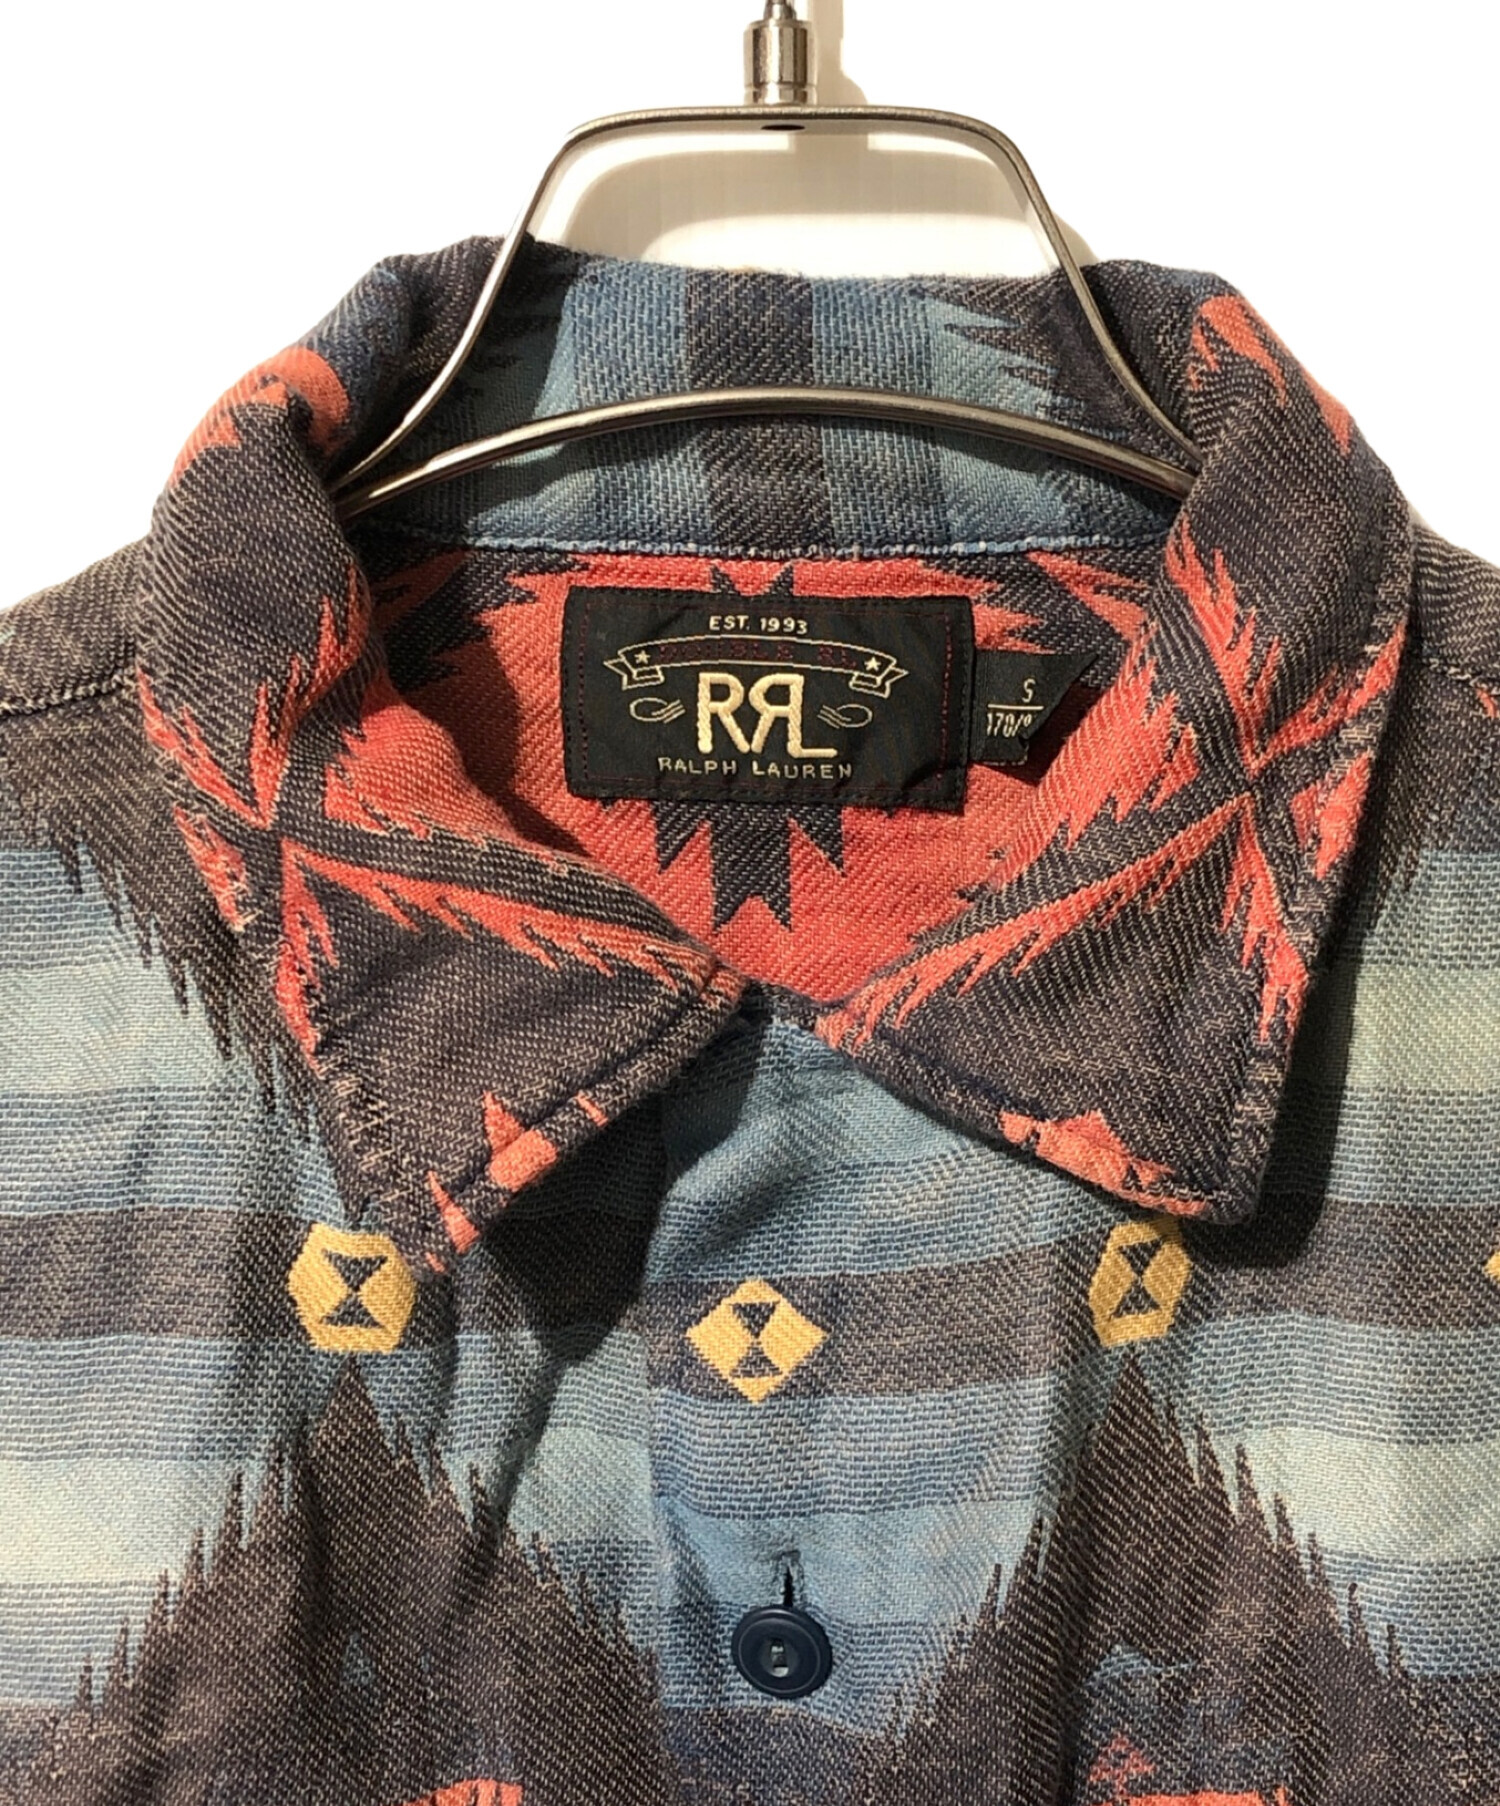 RRL (ダブルアールエル) ネイティブロングスリーブシャツ ブルー×レッド サイズ:S